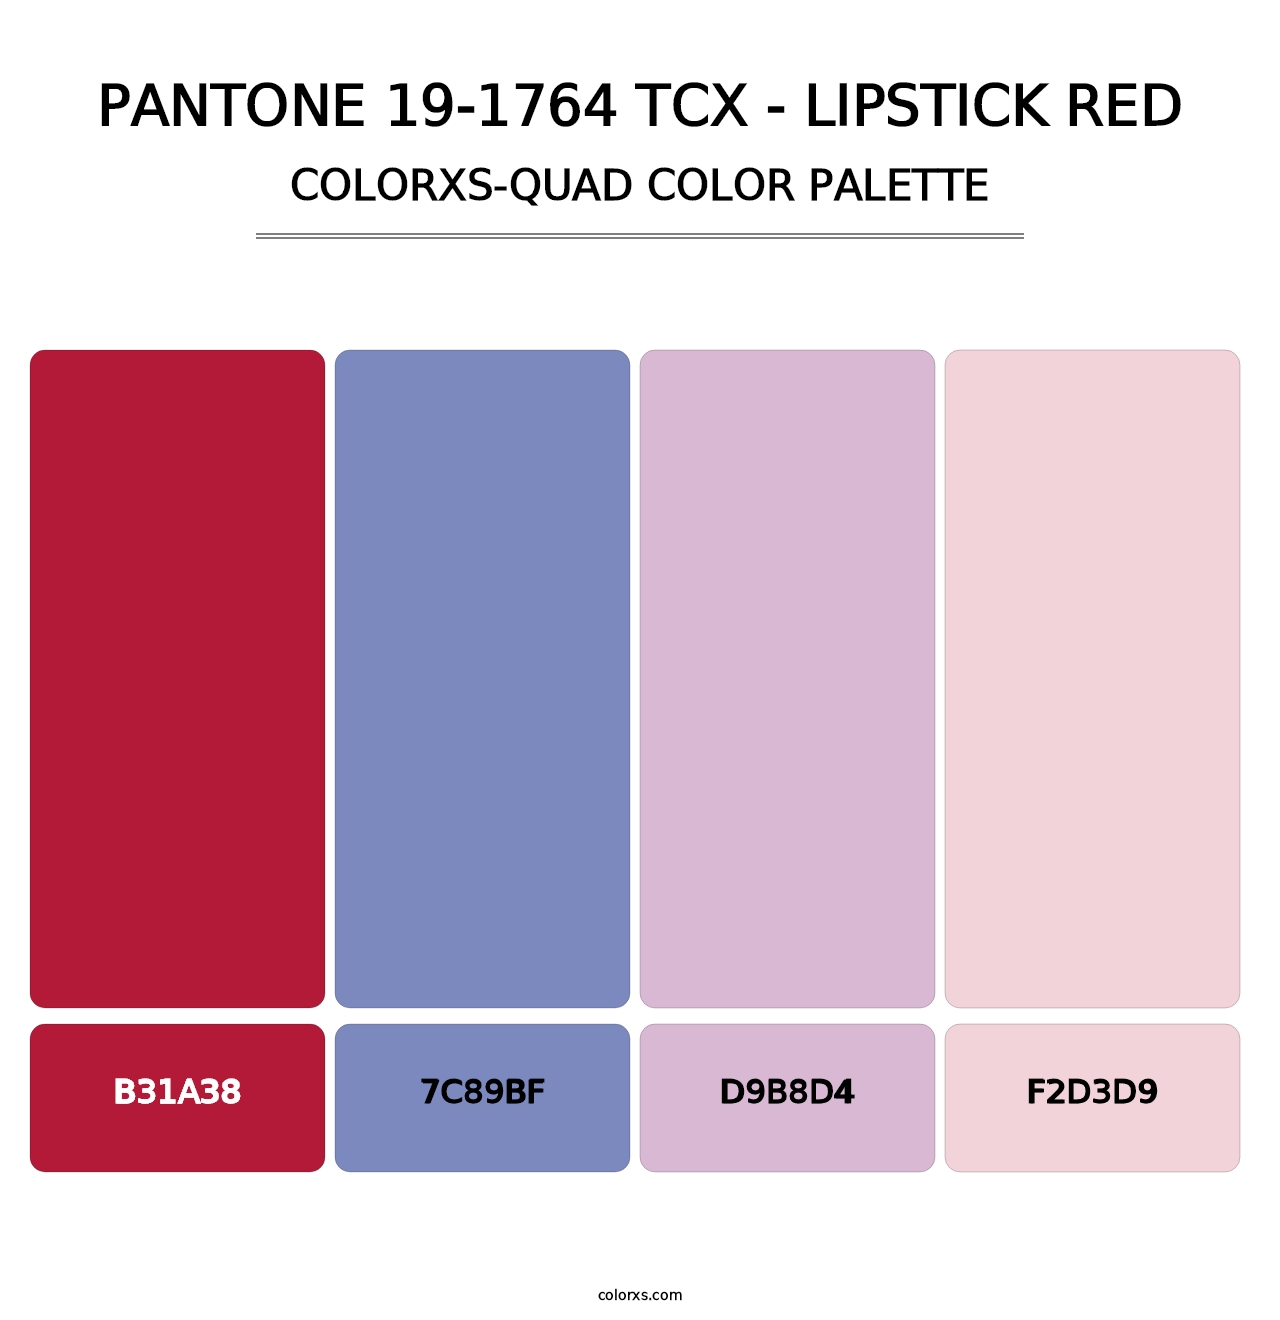 PANTONE 19-1764 TCX - Lipstick Red - Colorxs Quad Palette